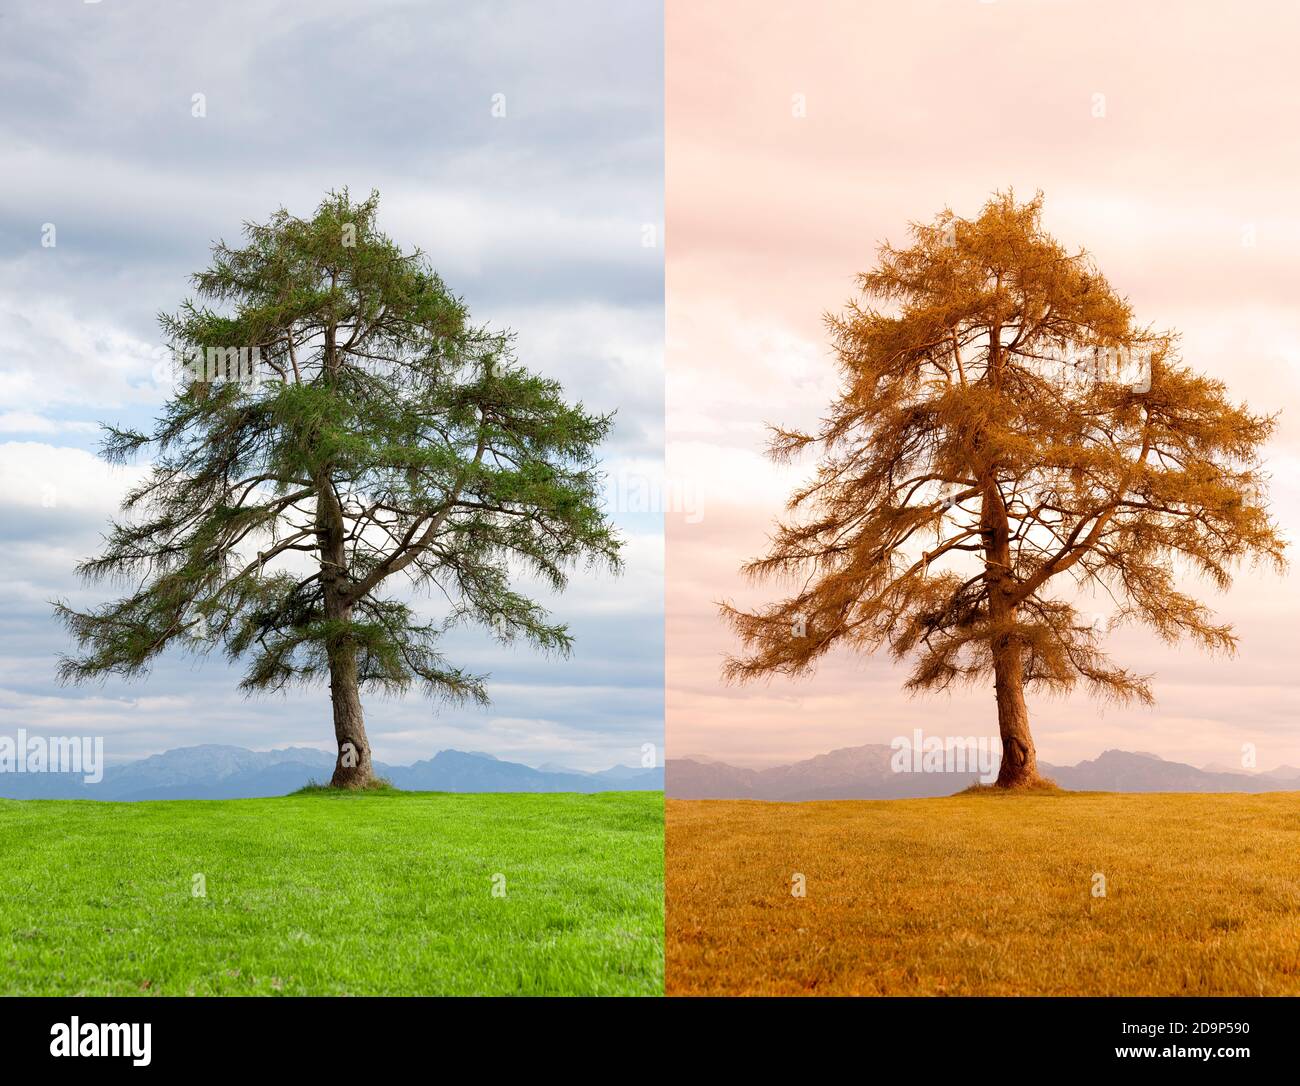 Baum im Wechsel der Jahreszeiten von Sommer zu Herbst Stockfoto